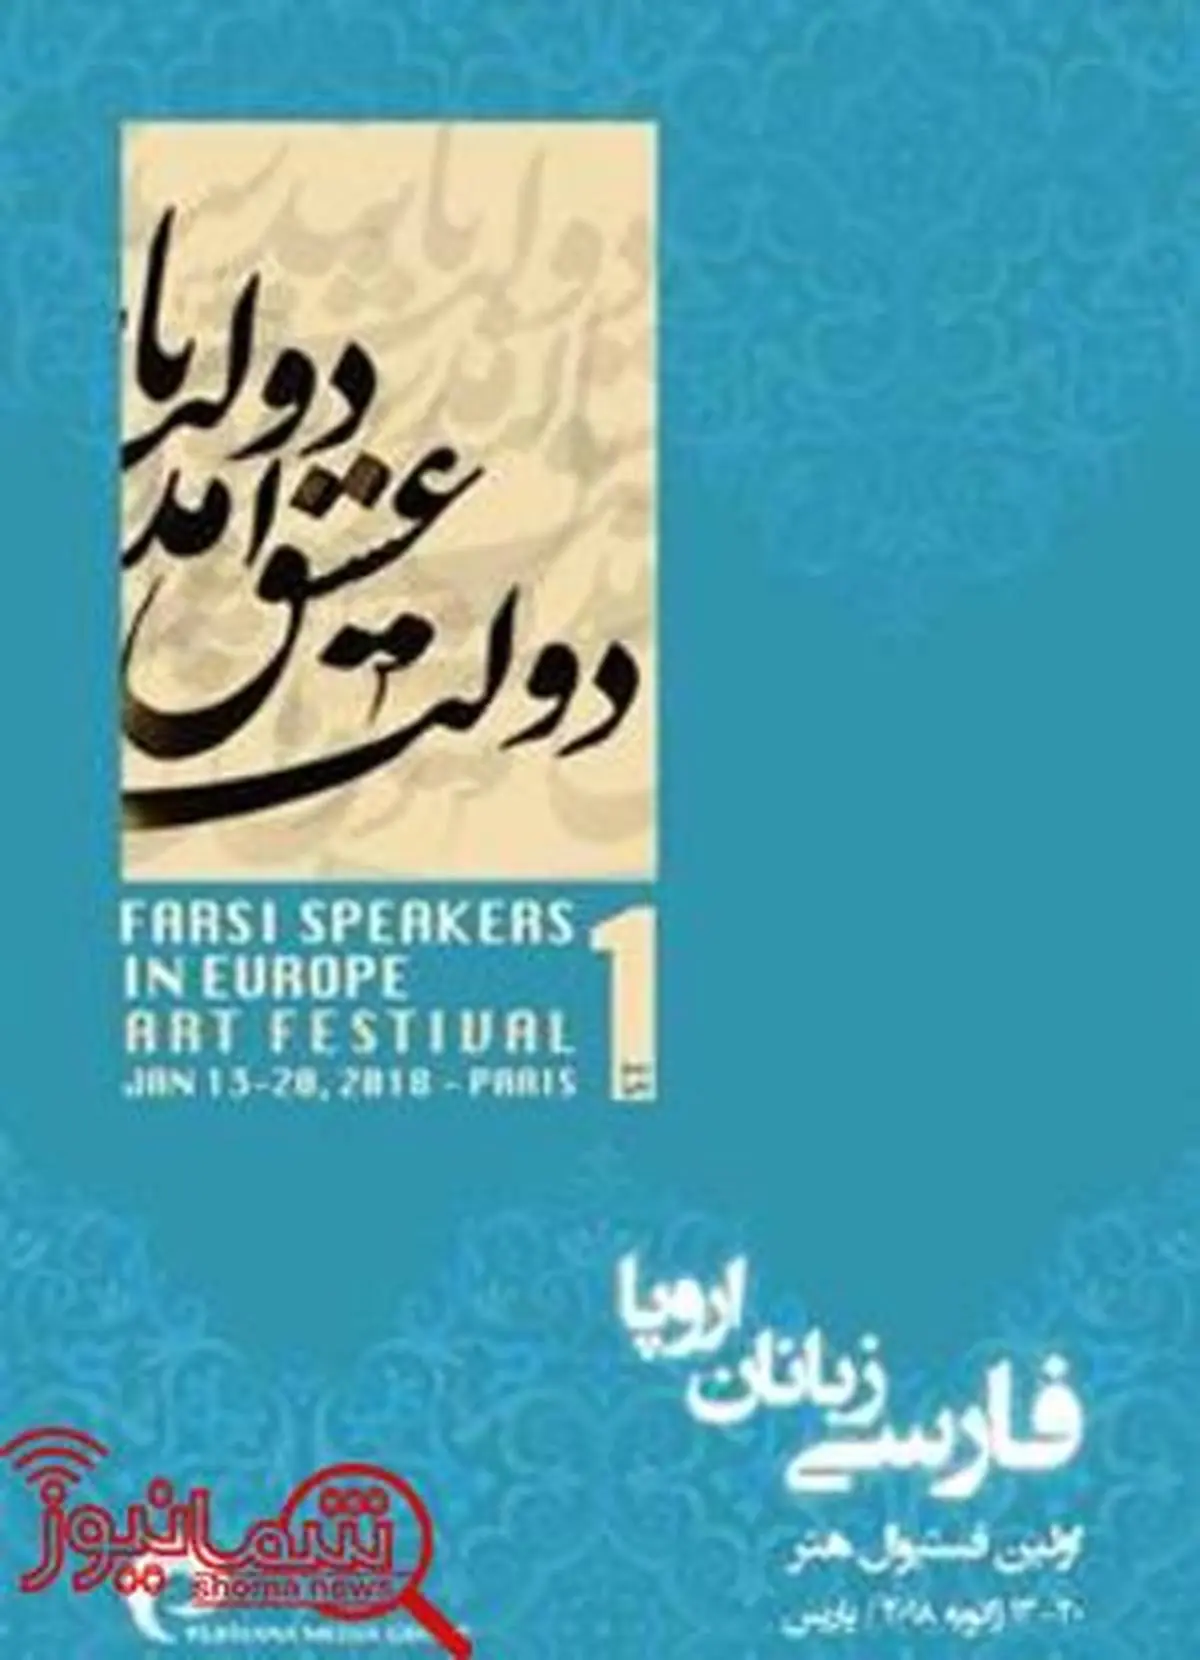 جشنواره هنری پارسی زبانان اروپا افتتاح می شود